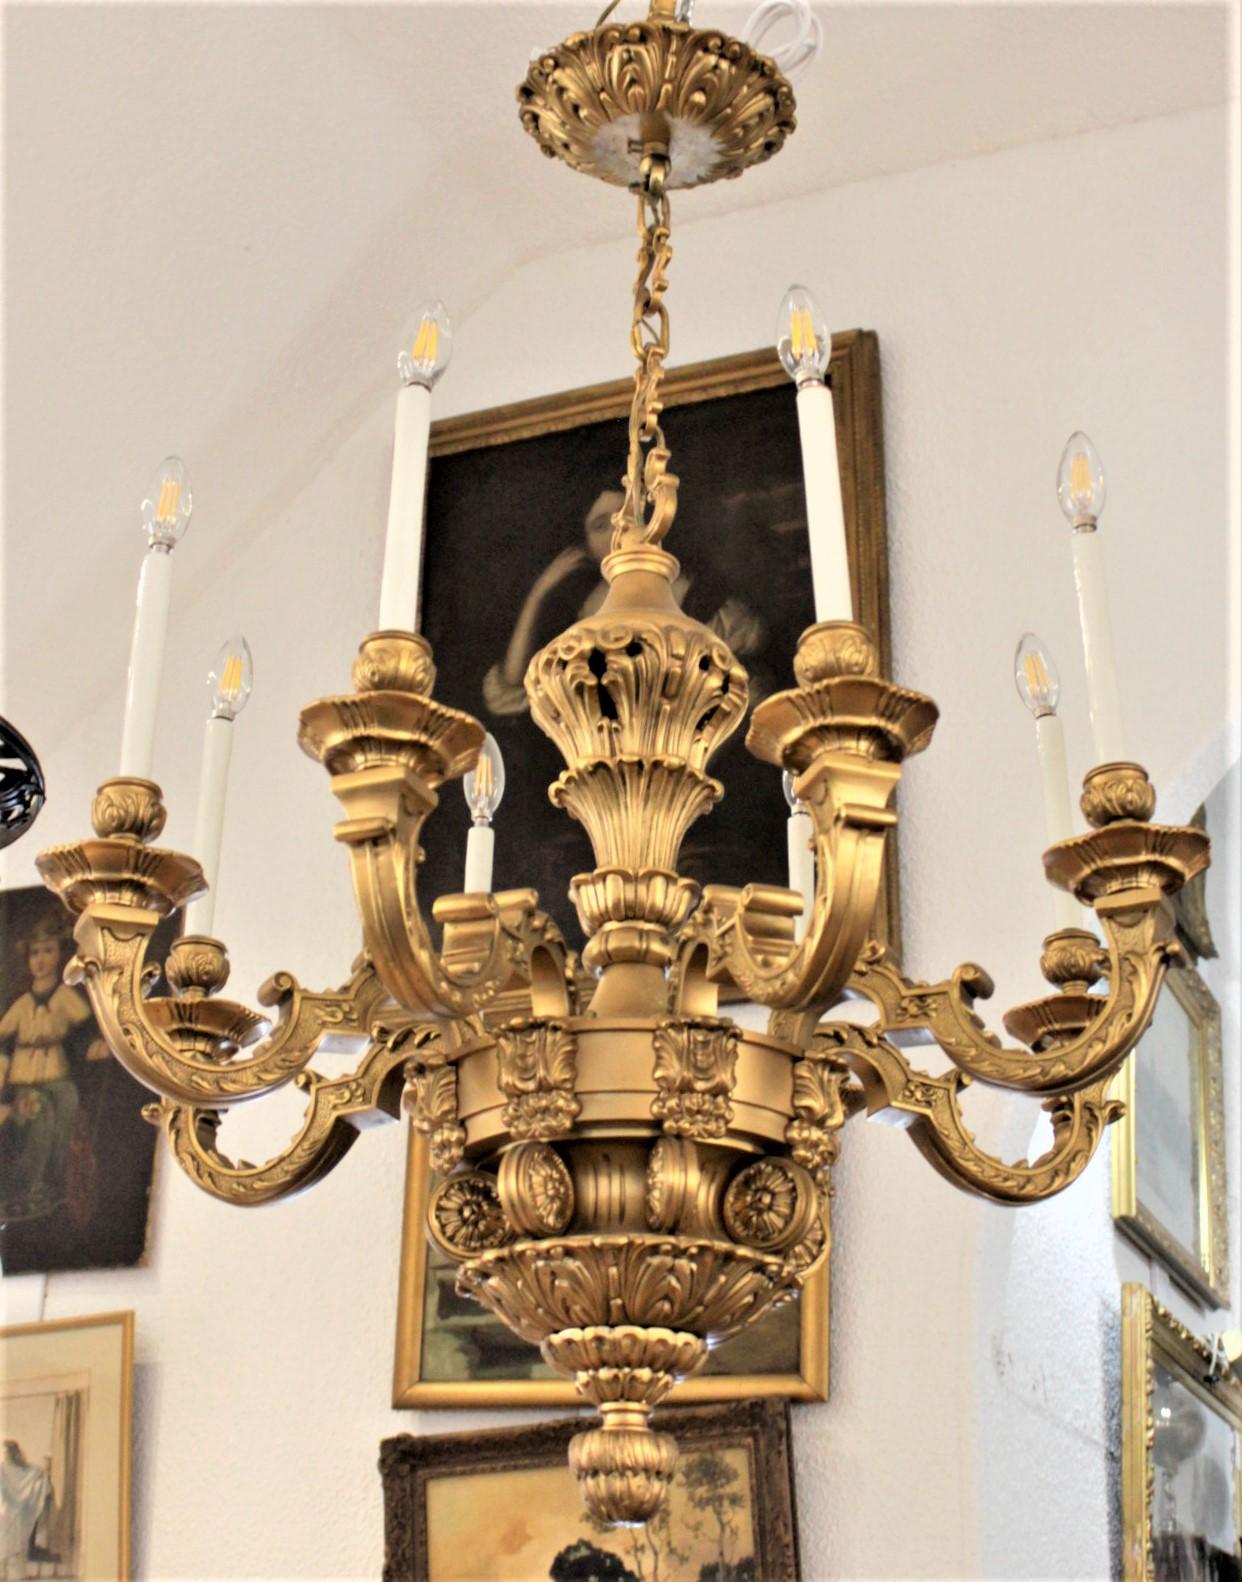 Dieser sehr große und massive achtarmige Kronleuchter aus gegossener und vergoldeter Bronze wurde um 1900 in Frankreich im Stil Ludwigs XIV. hergestellt. Der kunstvolle und sehr schwere Guss ist mit stilisierten Blättern und Schnörkeln verziert, die